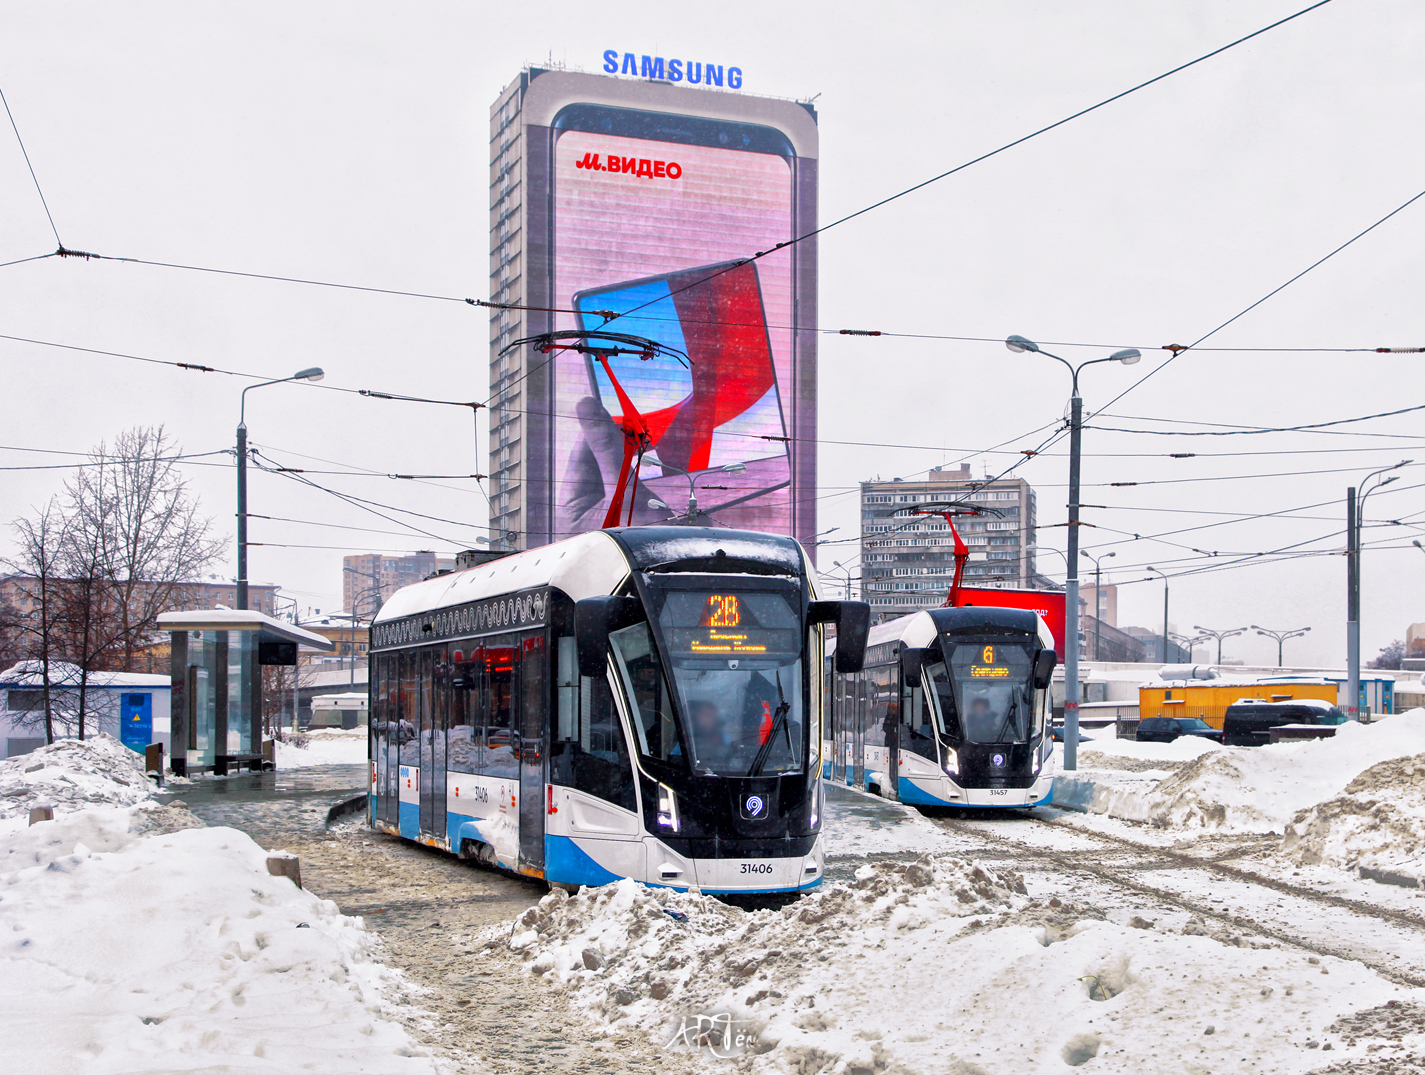 Moskau, 71-931M “Vityaz-M” Nr. 31406; Moskau — Terminus stations